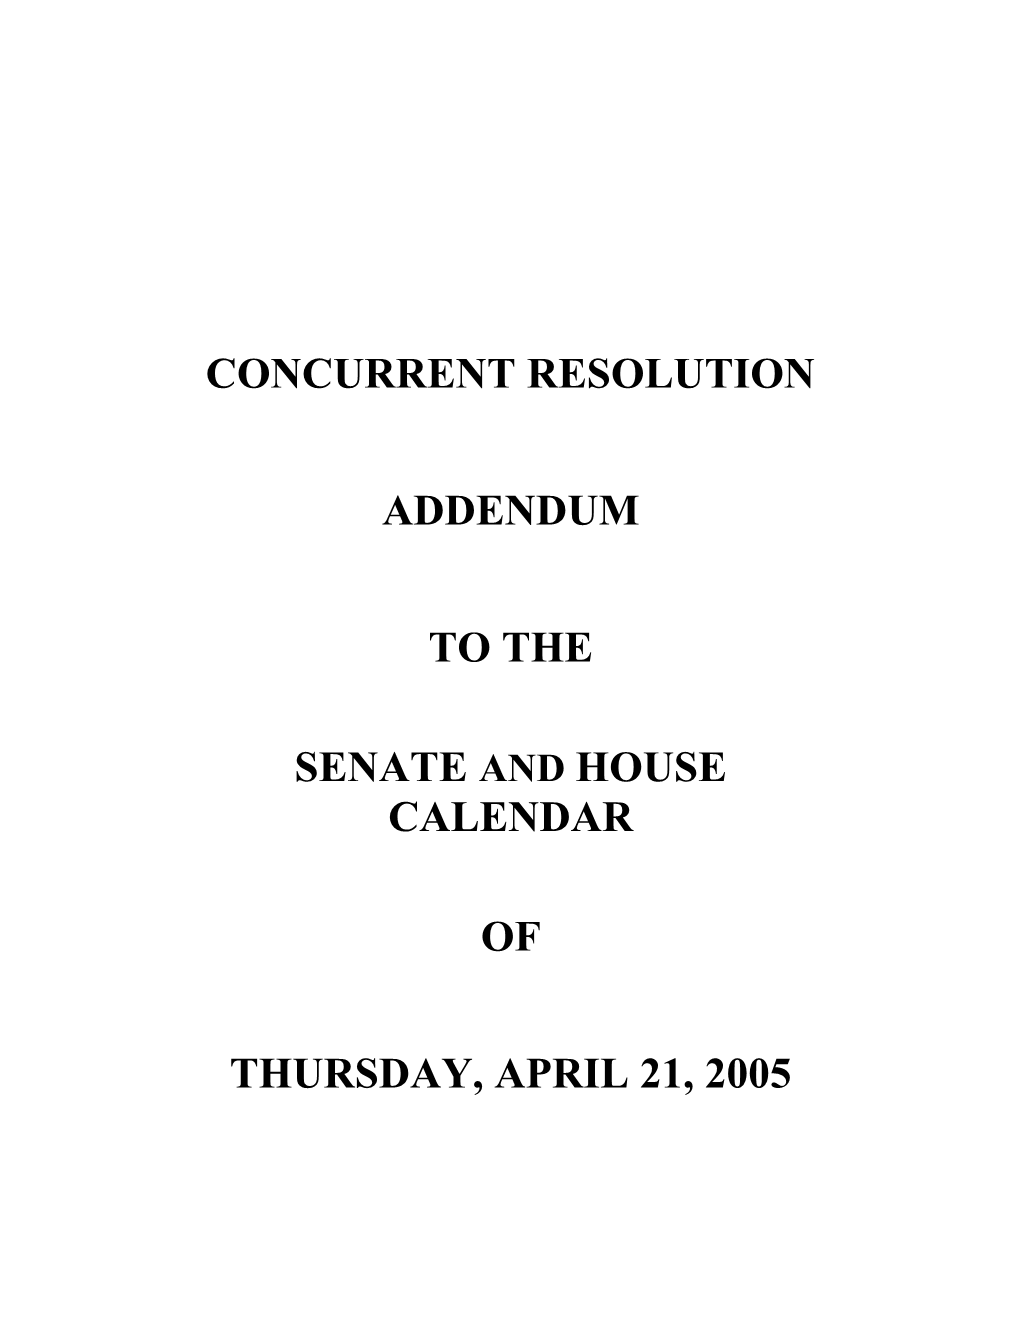 Senate and House Calendar s2